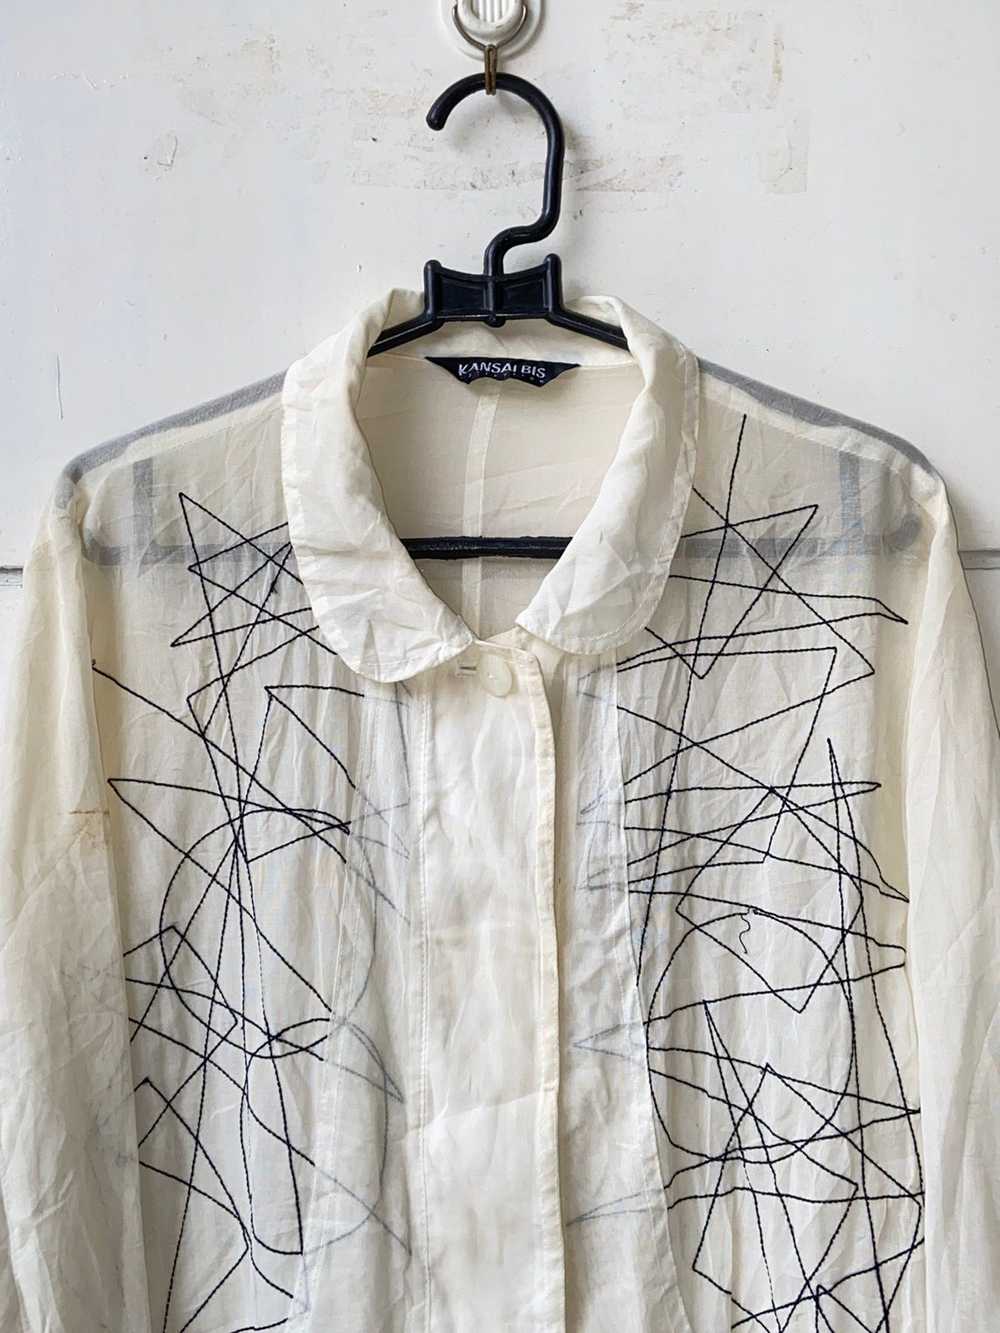 Kansai Yamamoto KANSAI BIS White Mesh Shirt - image 10